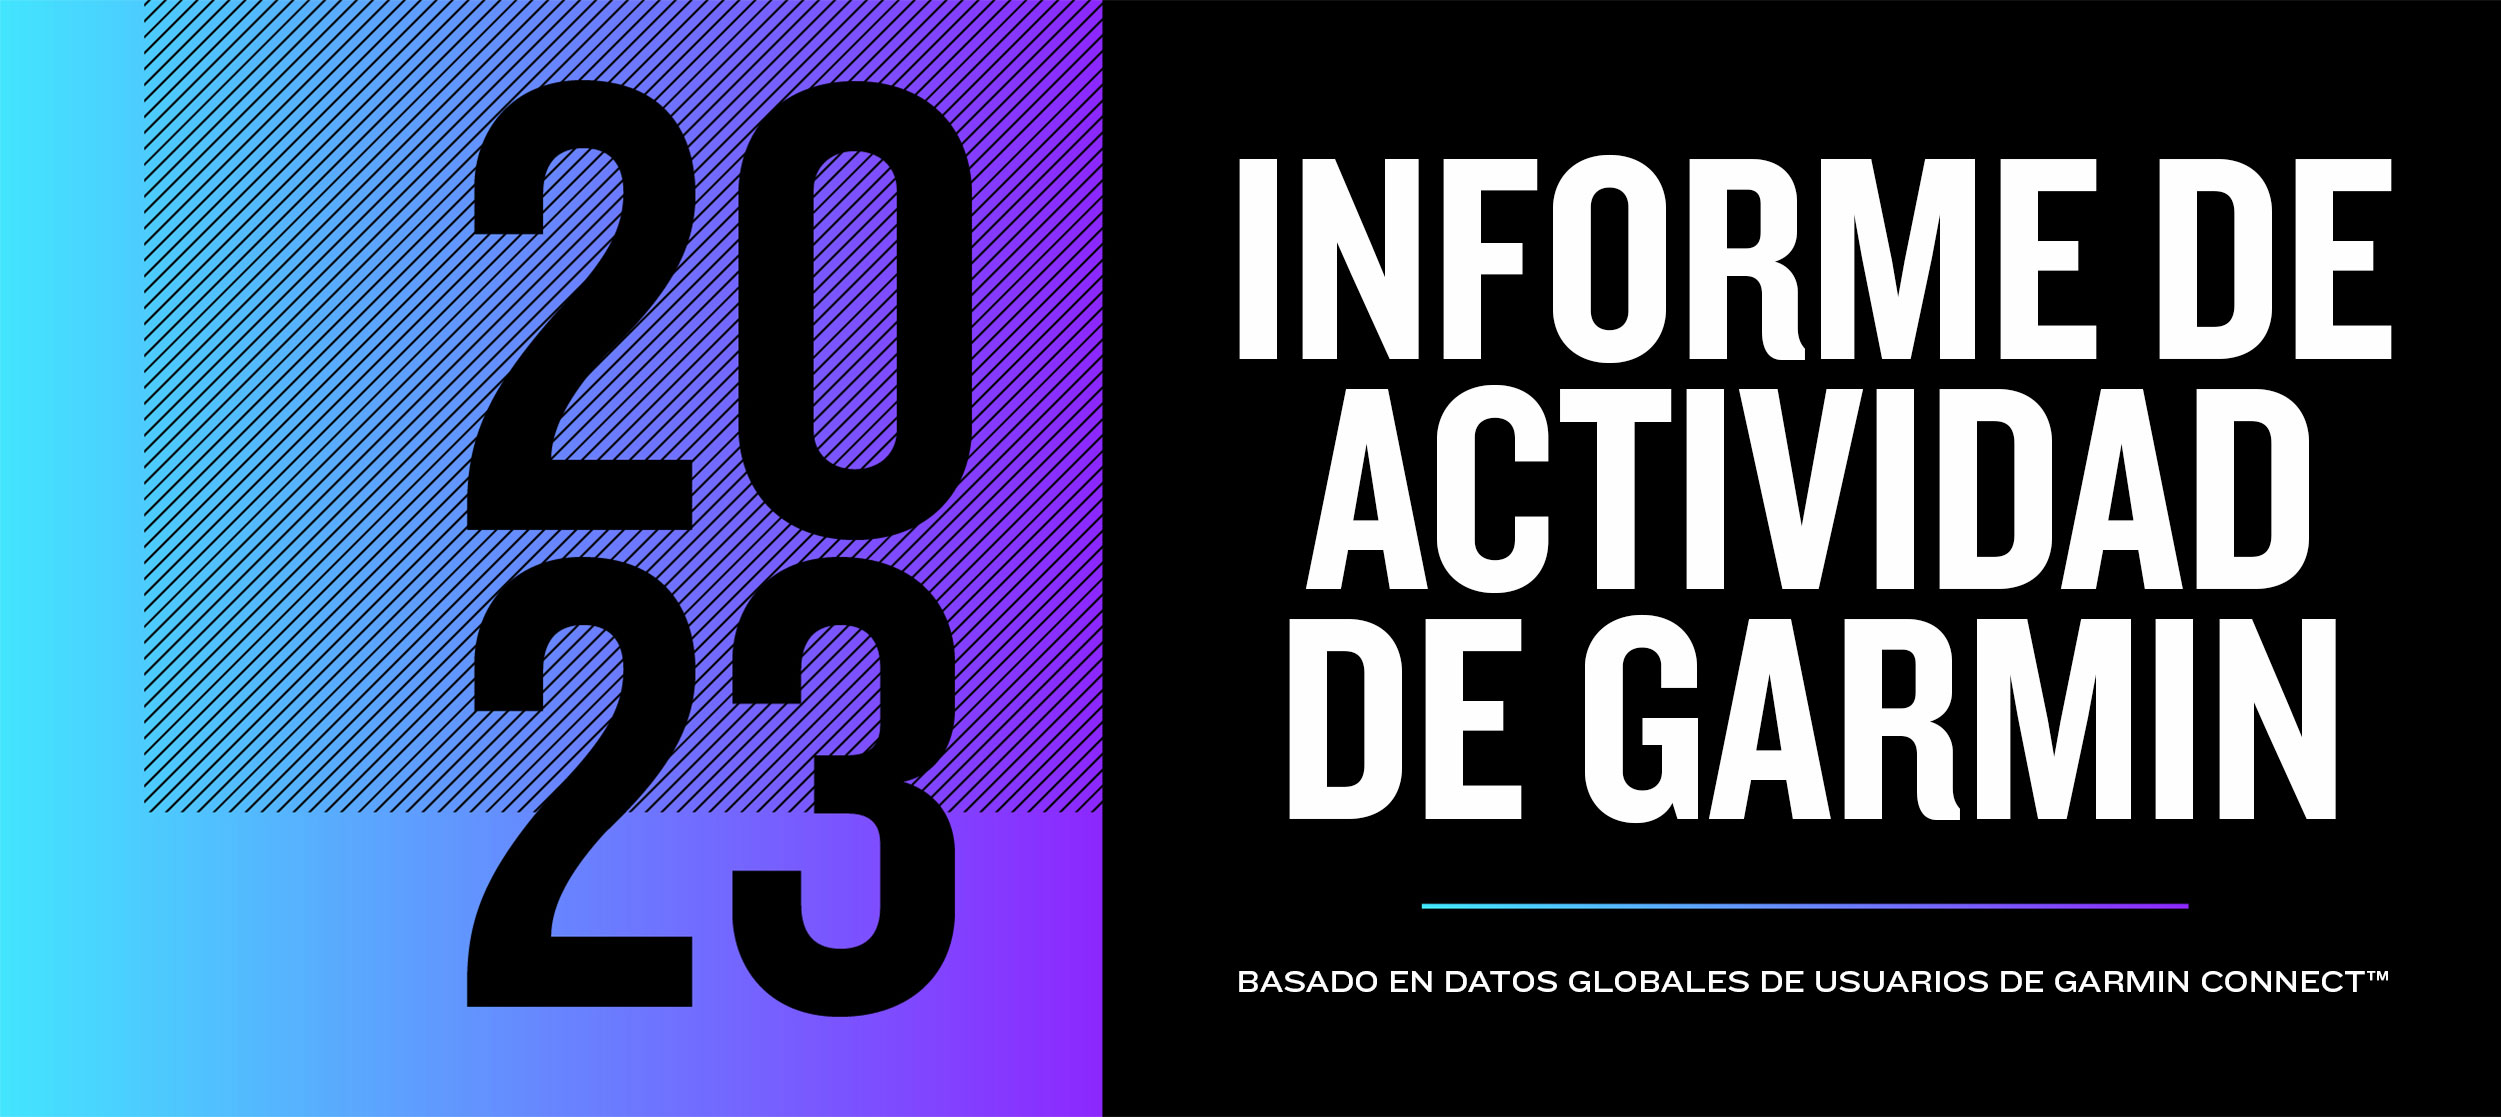 GARMIN FORMA PARTE DE BICI EXPO 2023, TOP 5 DE EXPOS DE CICLISMO EN EL  MUNDO - Garmin Blog Mexico